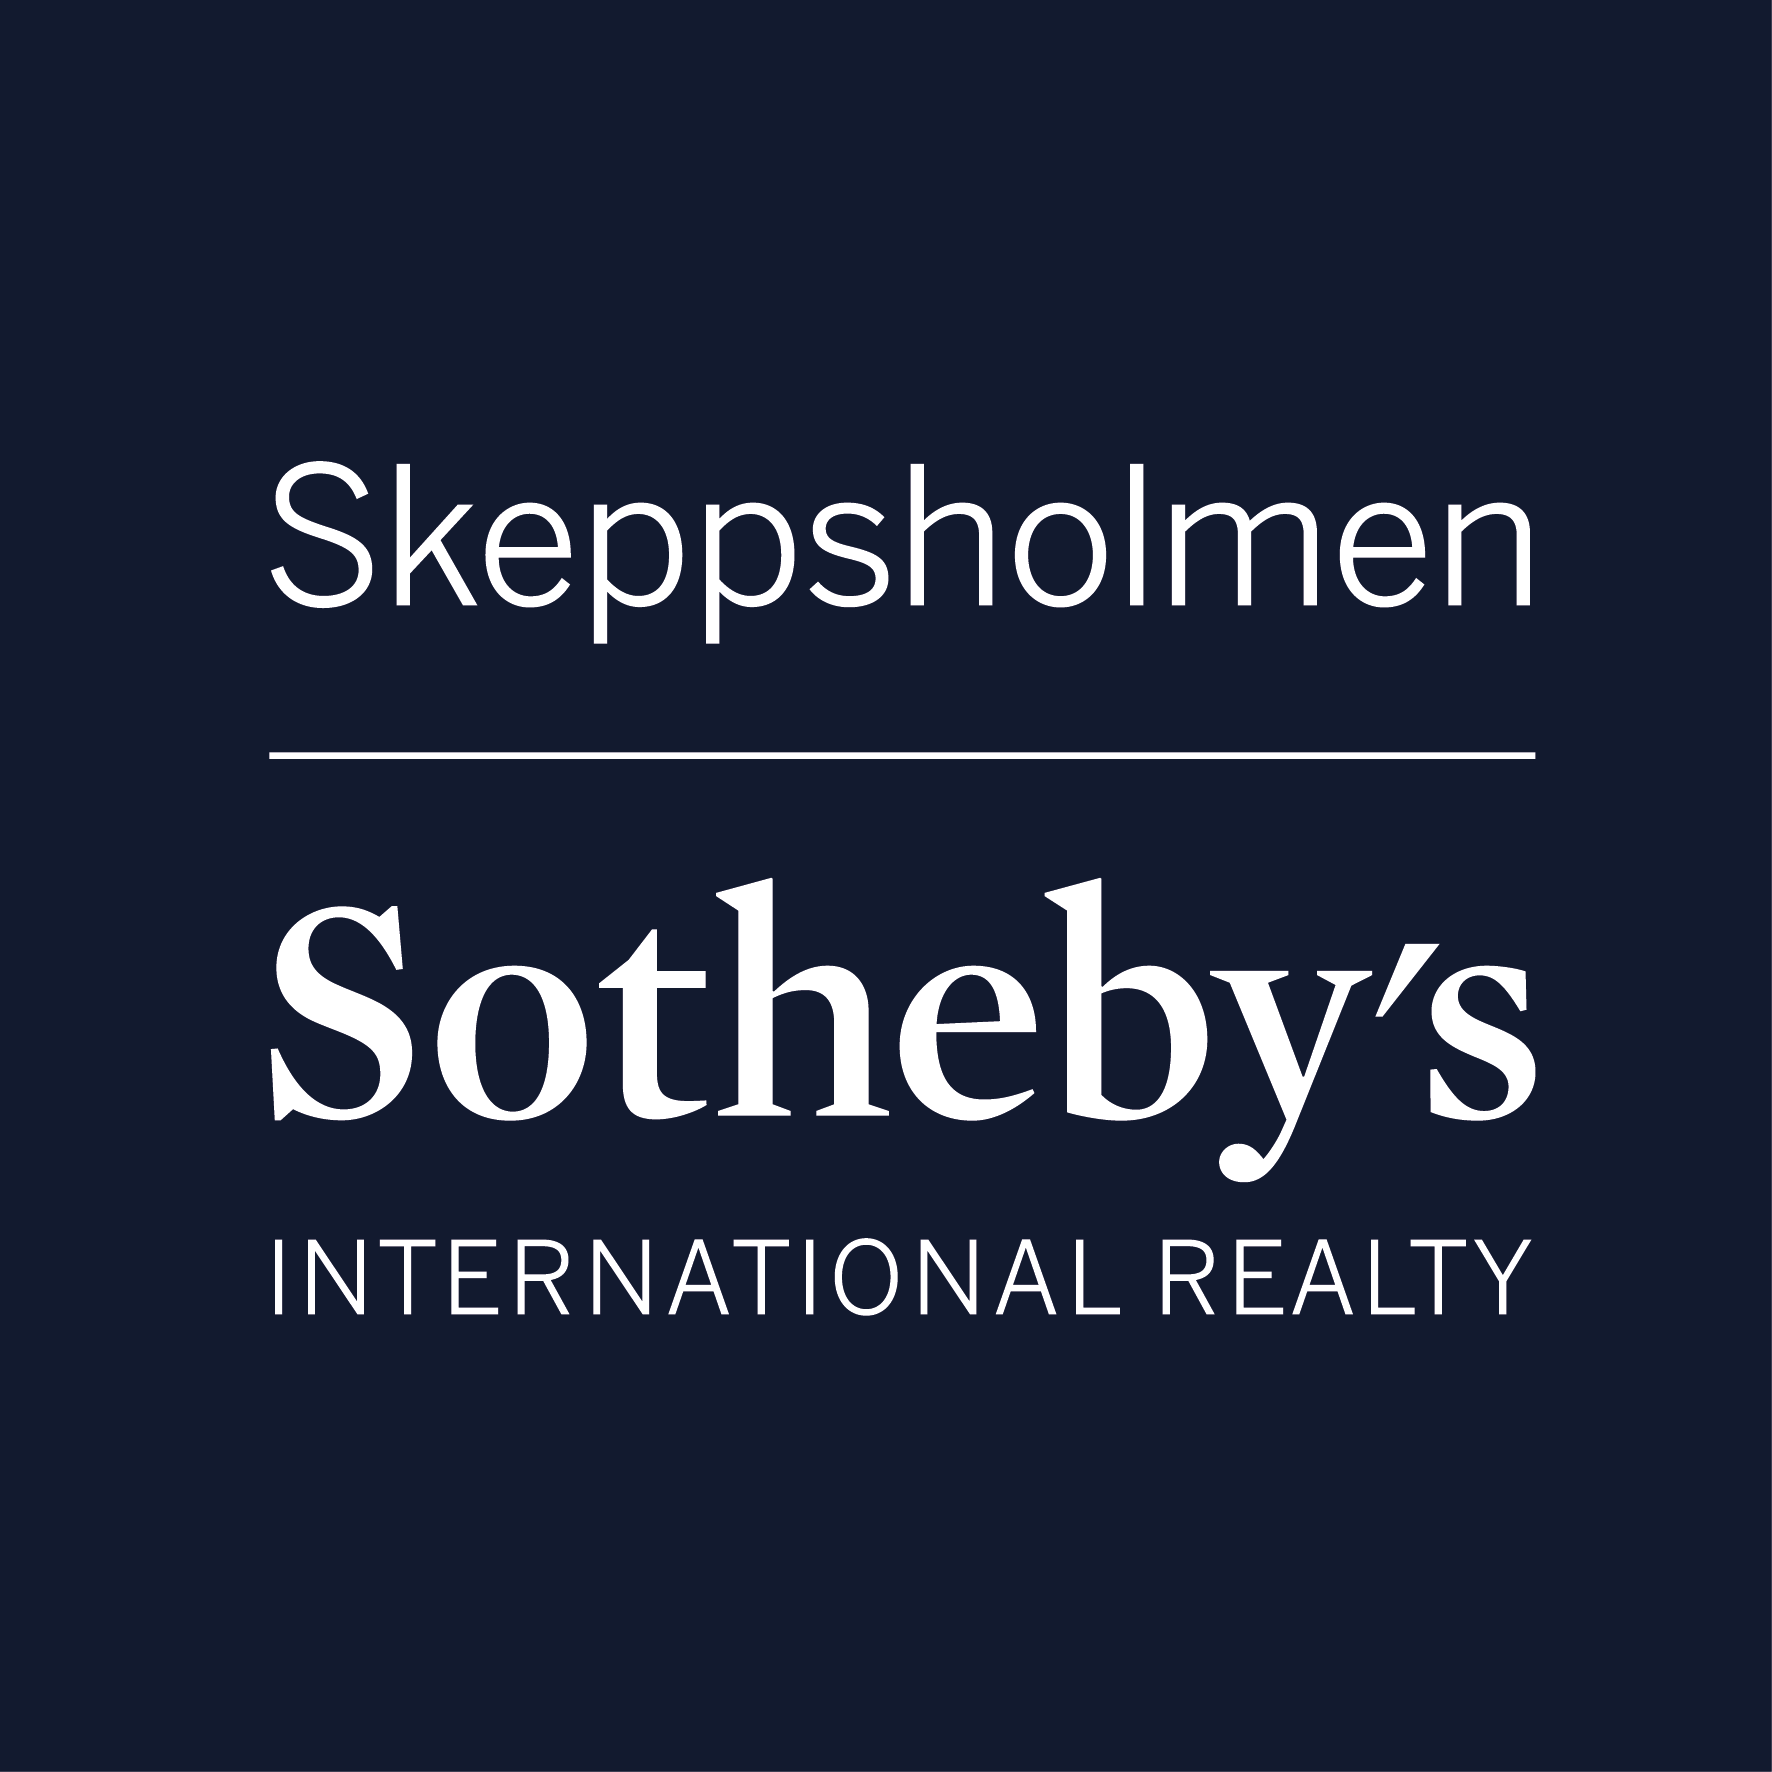 Mäklarbyrån Skeppsholmen Sotheby's logotyp.